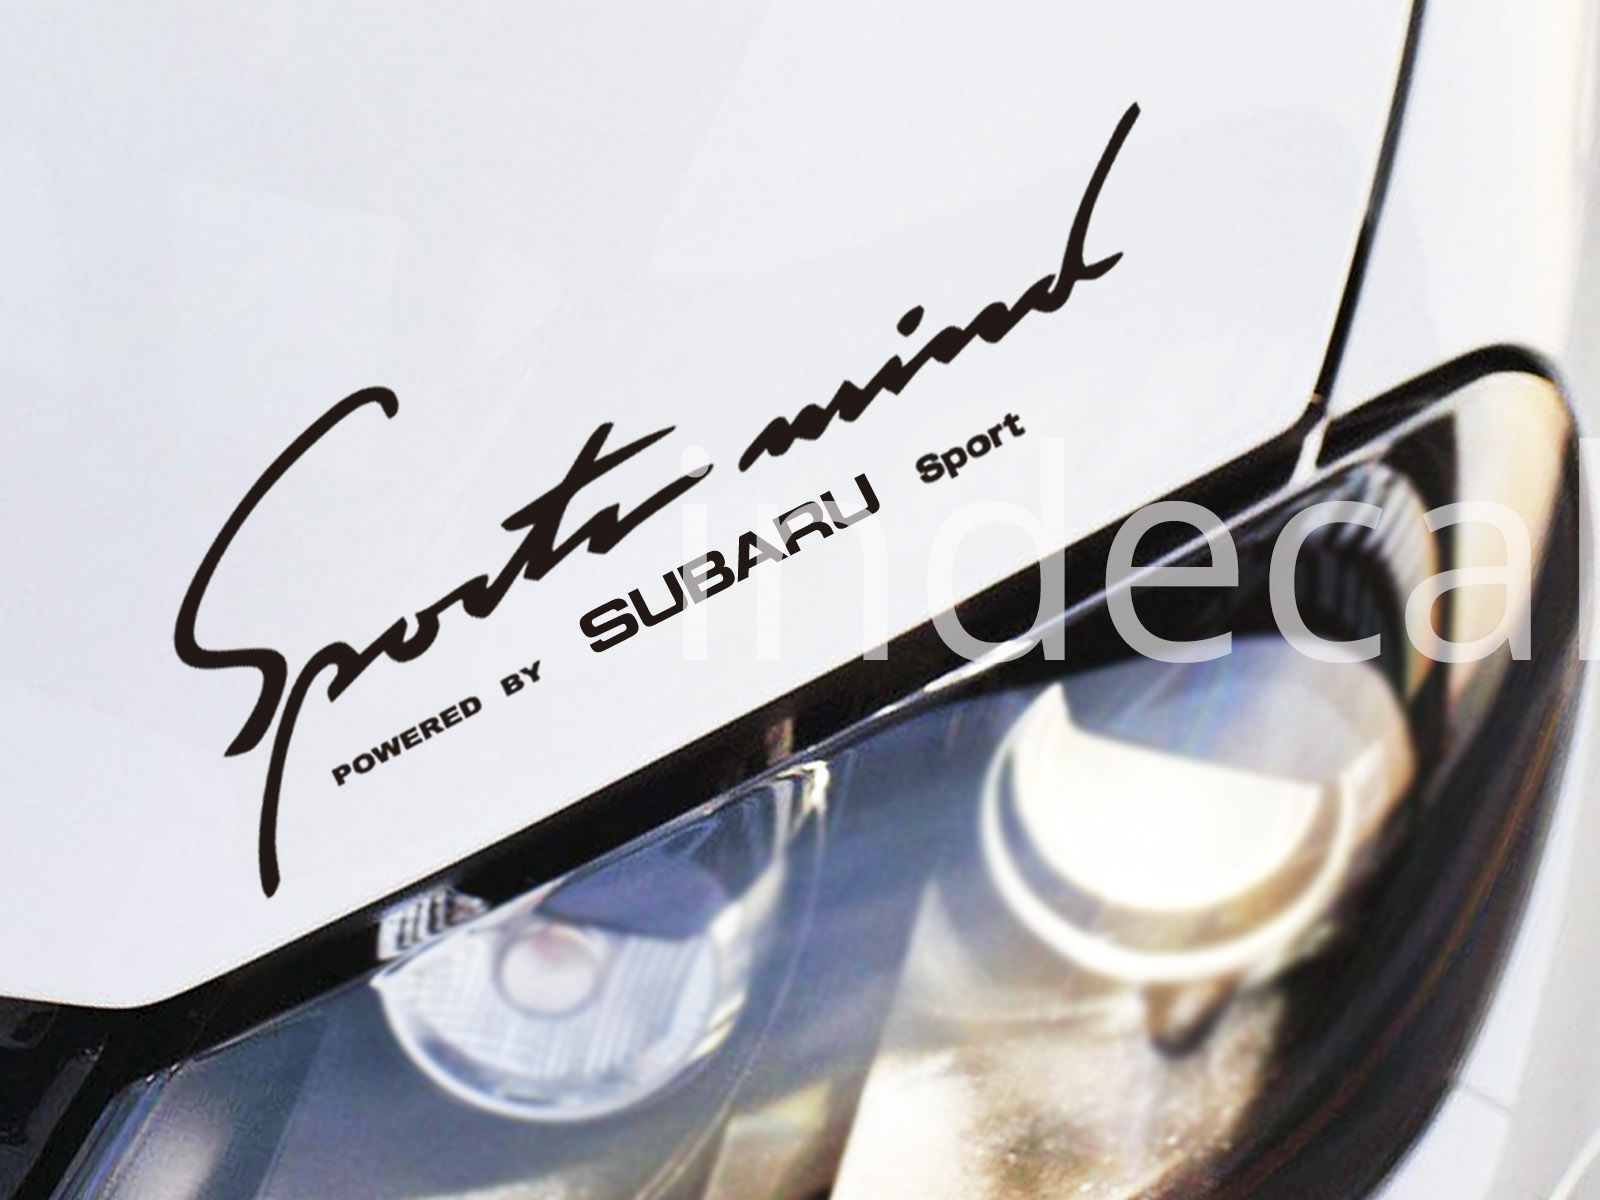 1 x Subaru Sports Mind Sticker - Black